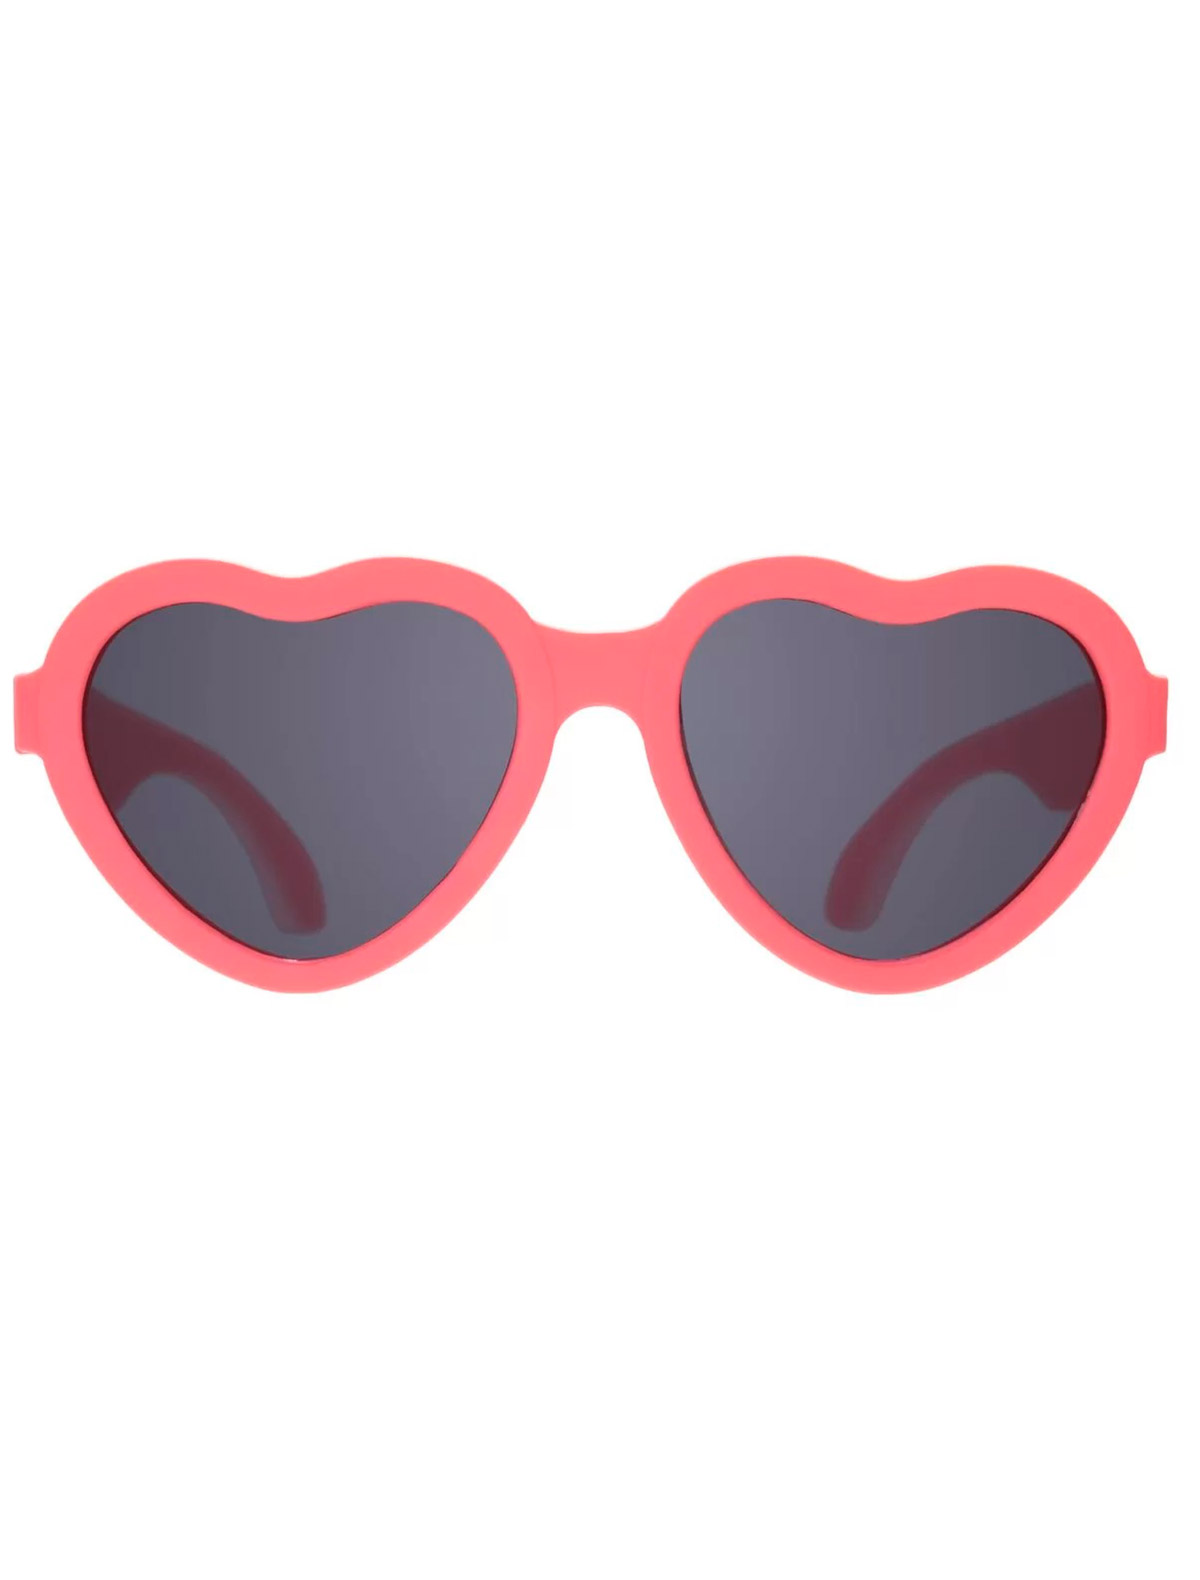 солнцезащитные очки babiators для девочки, красные